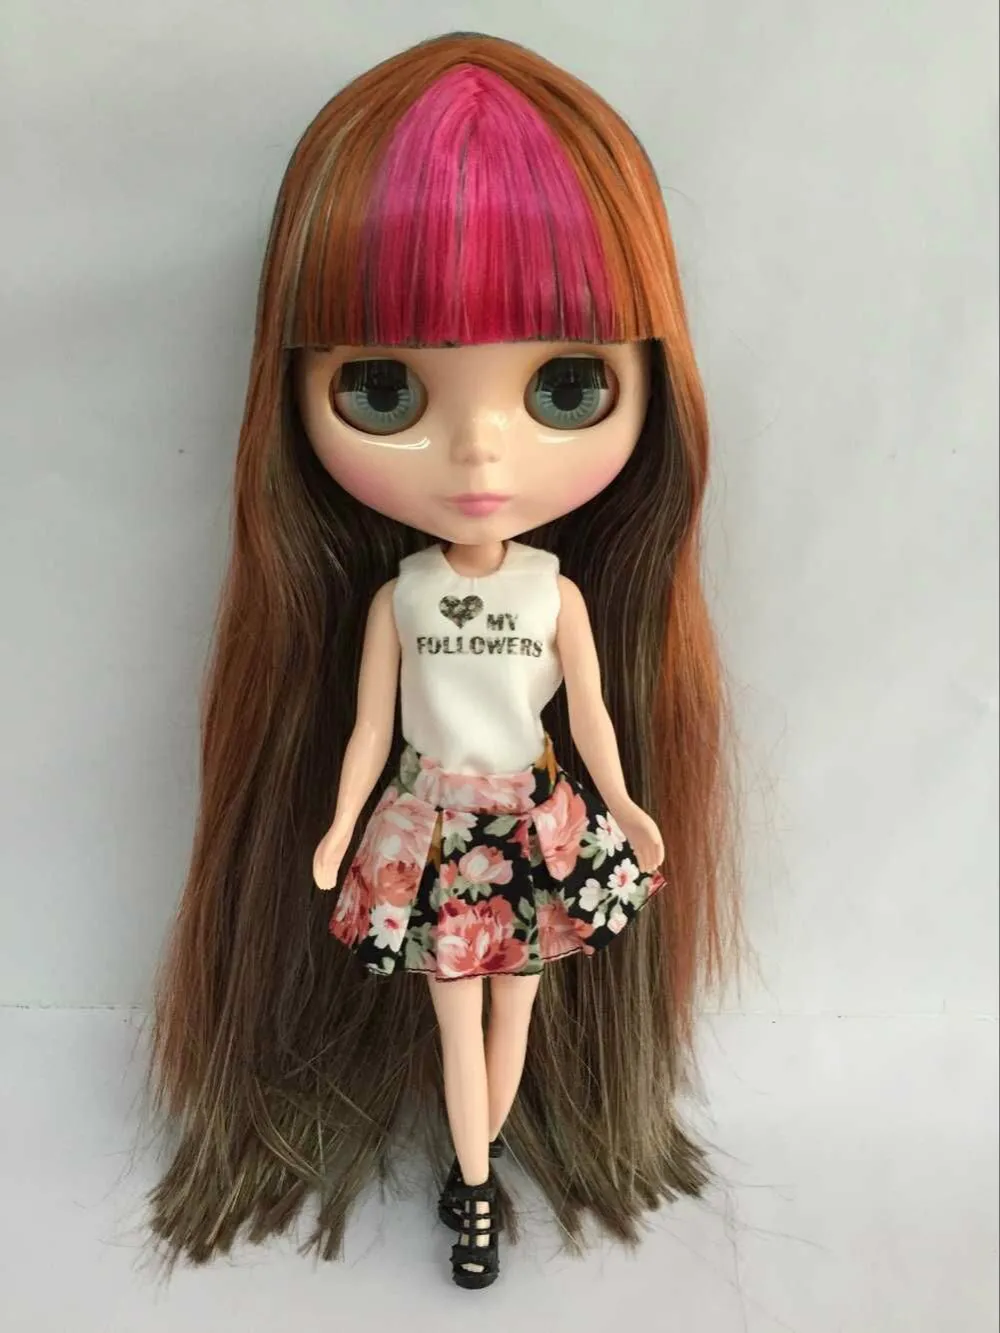 Free shipping cost Nude Blyth dolls DIY Fashion doll on 